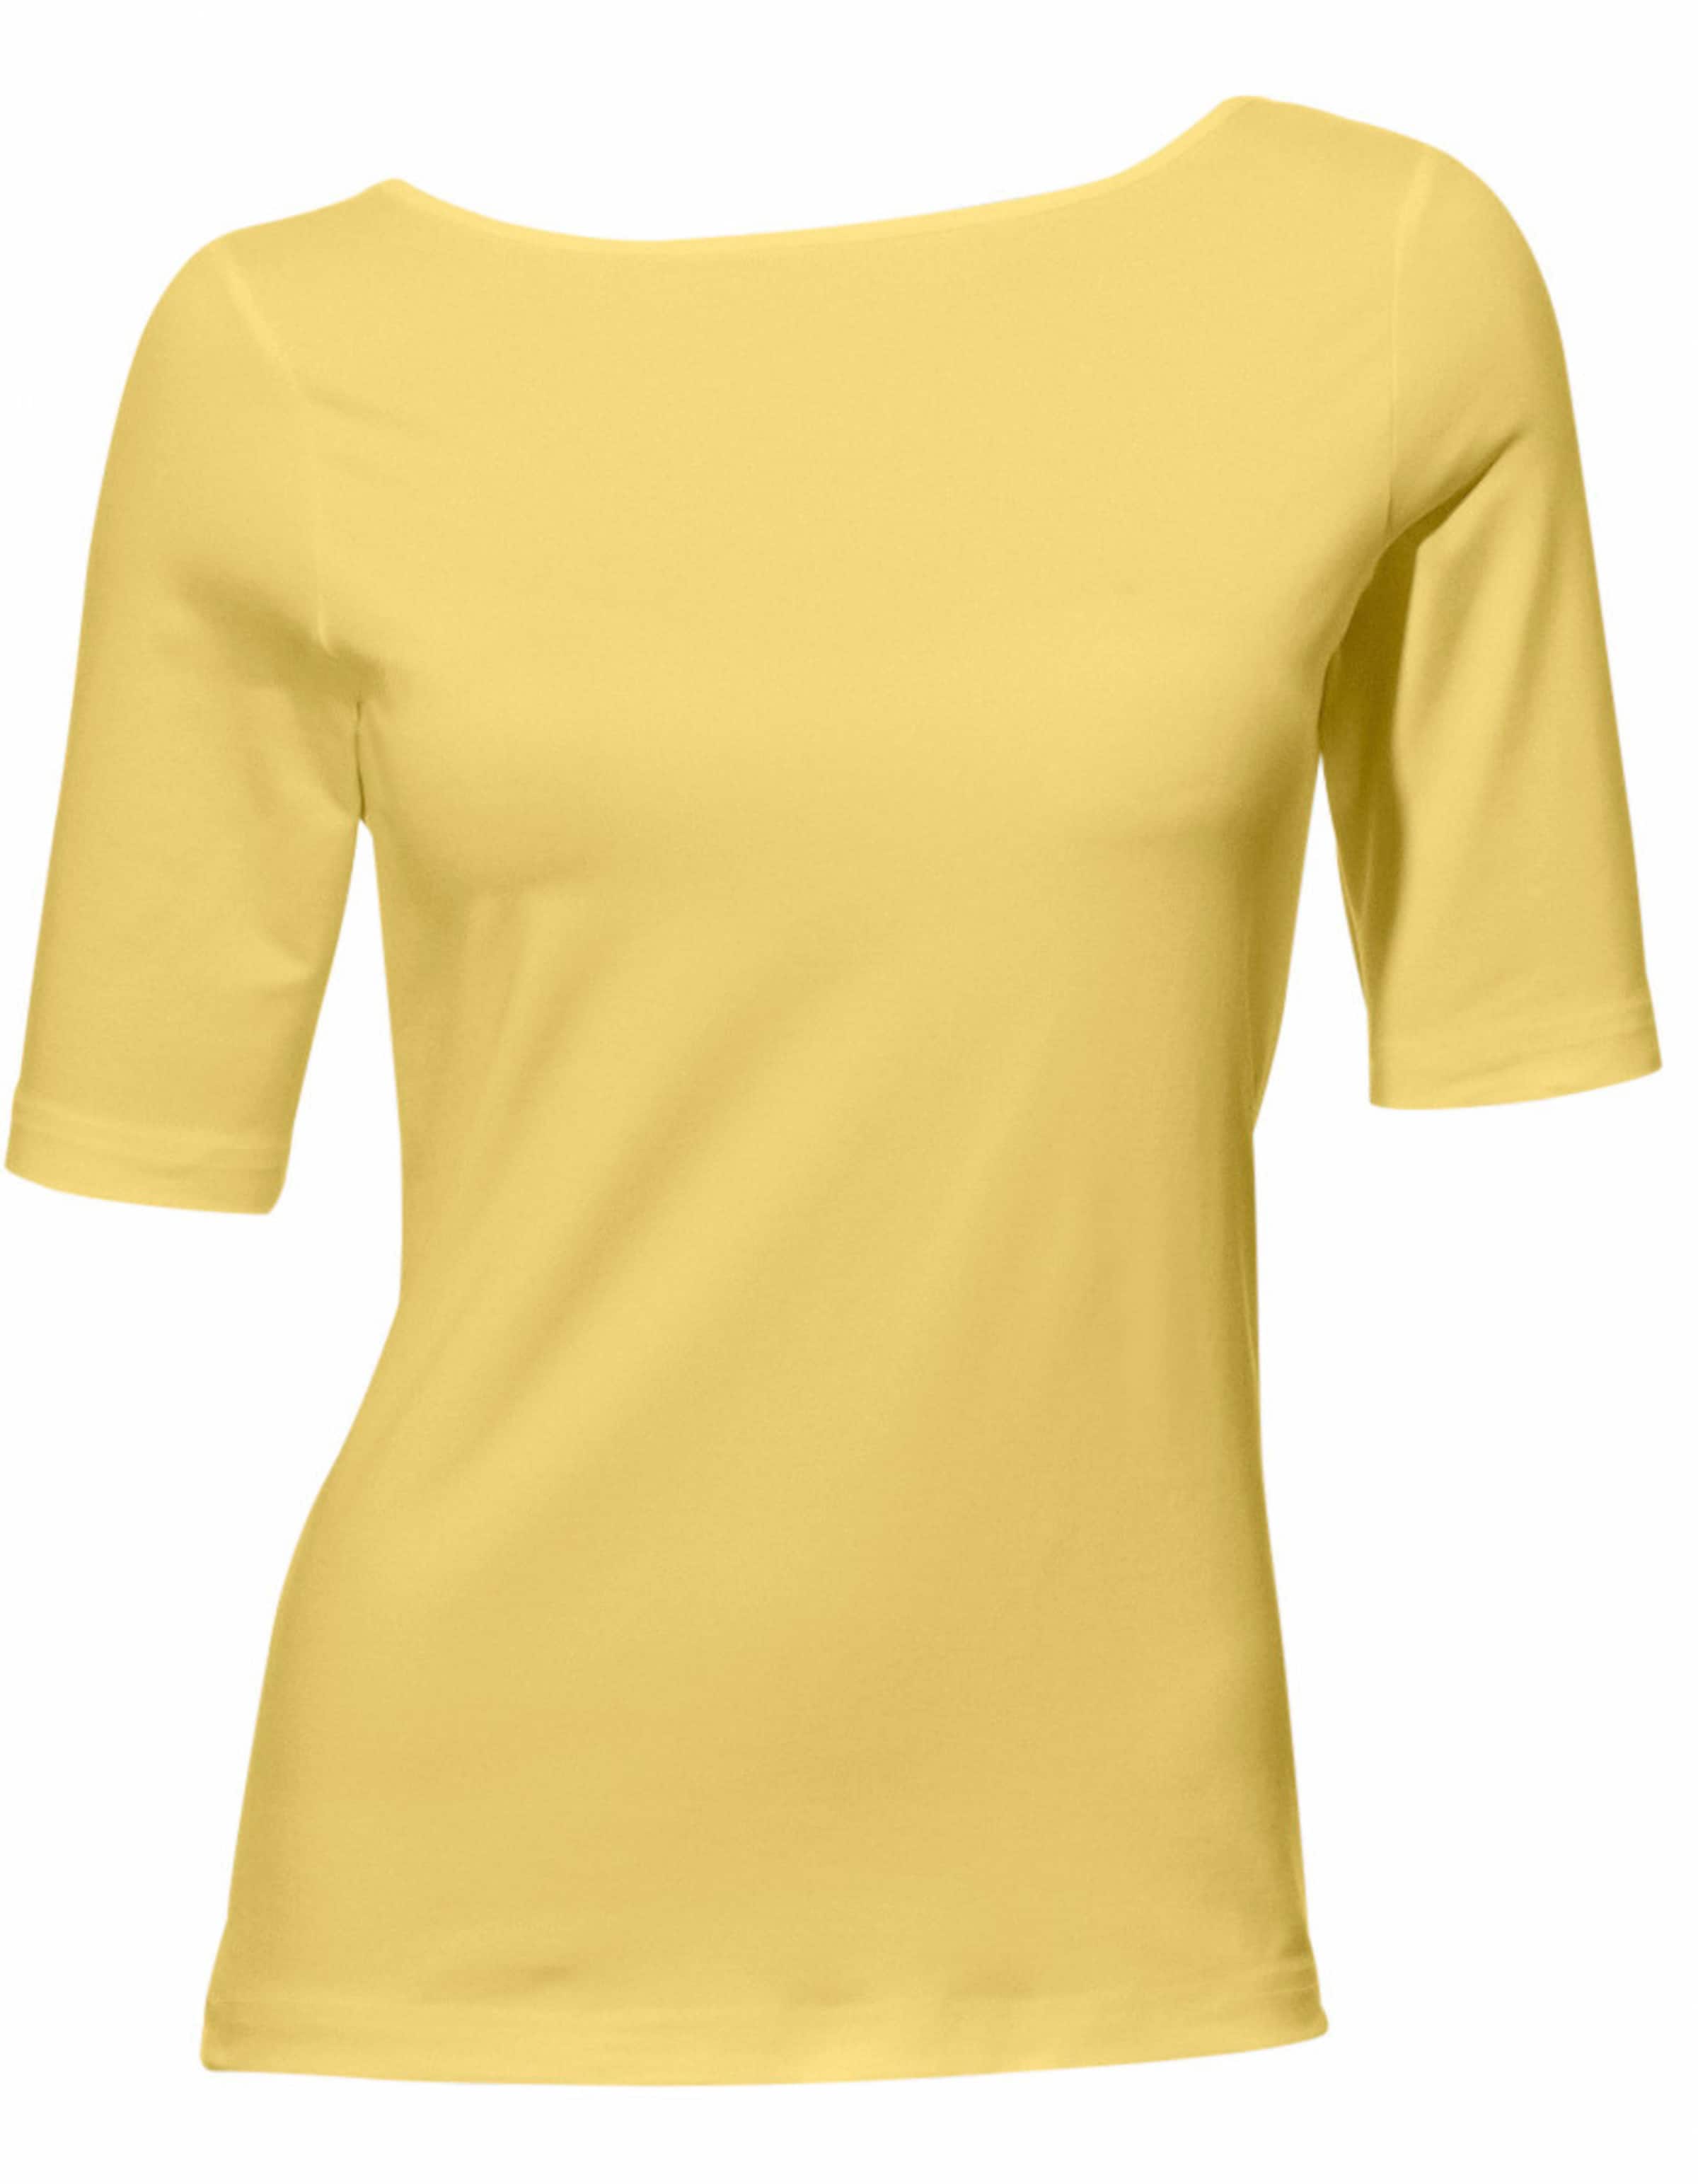 Witt Damen U-Boot-Shirt, gelb